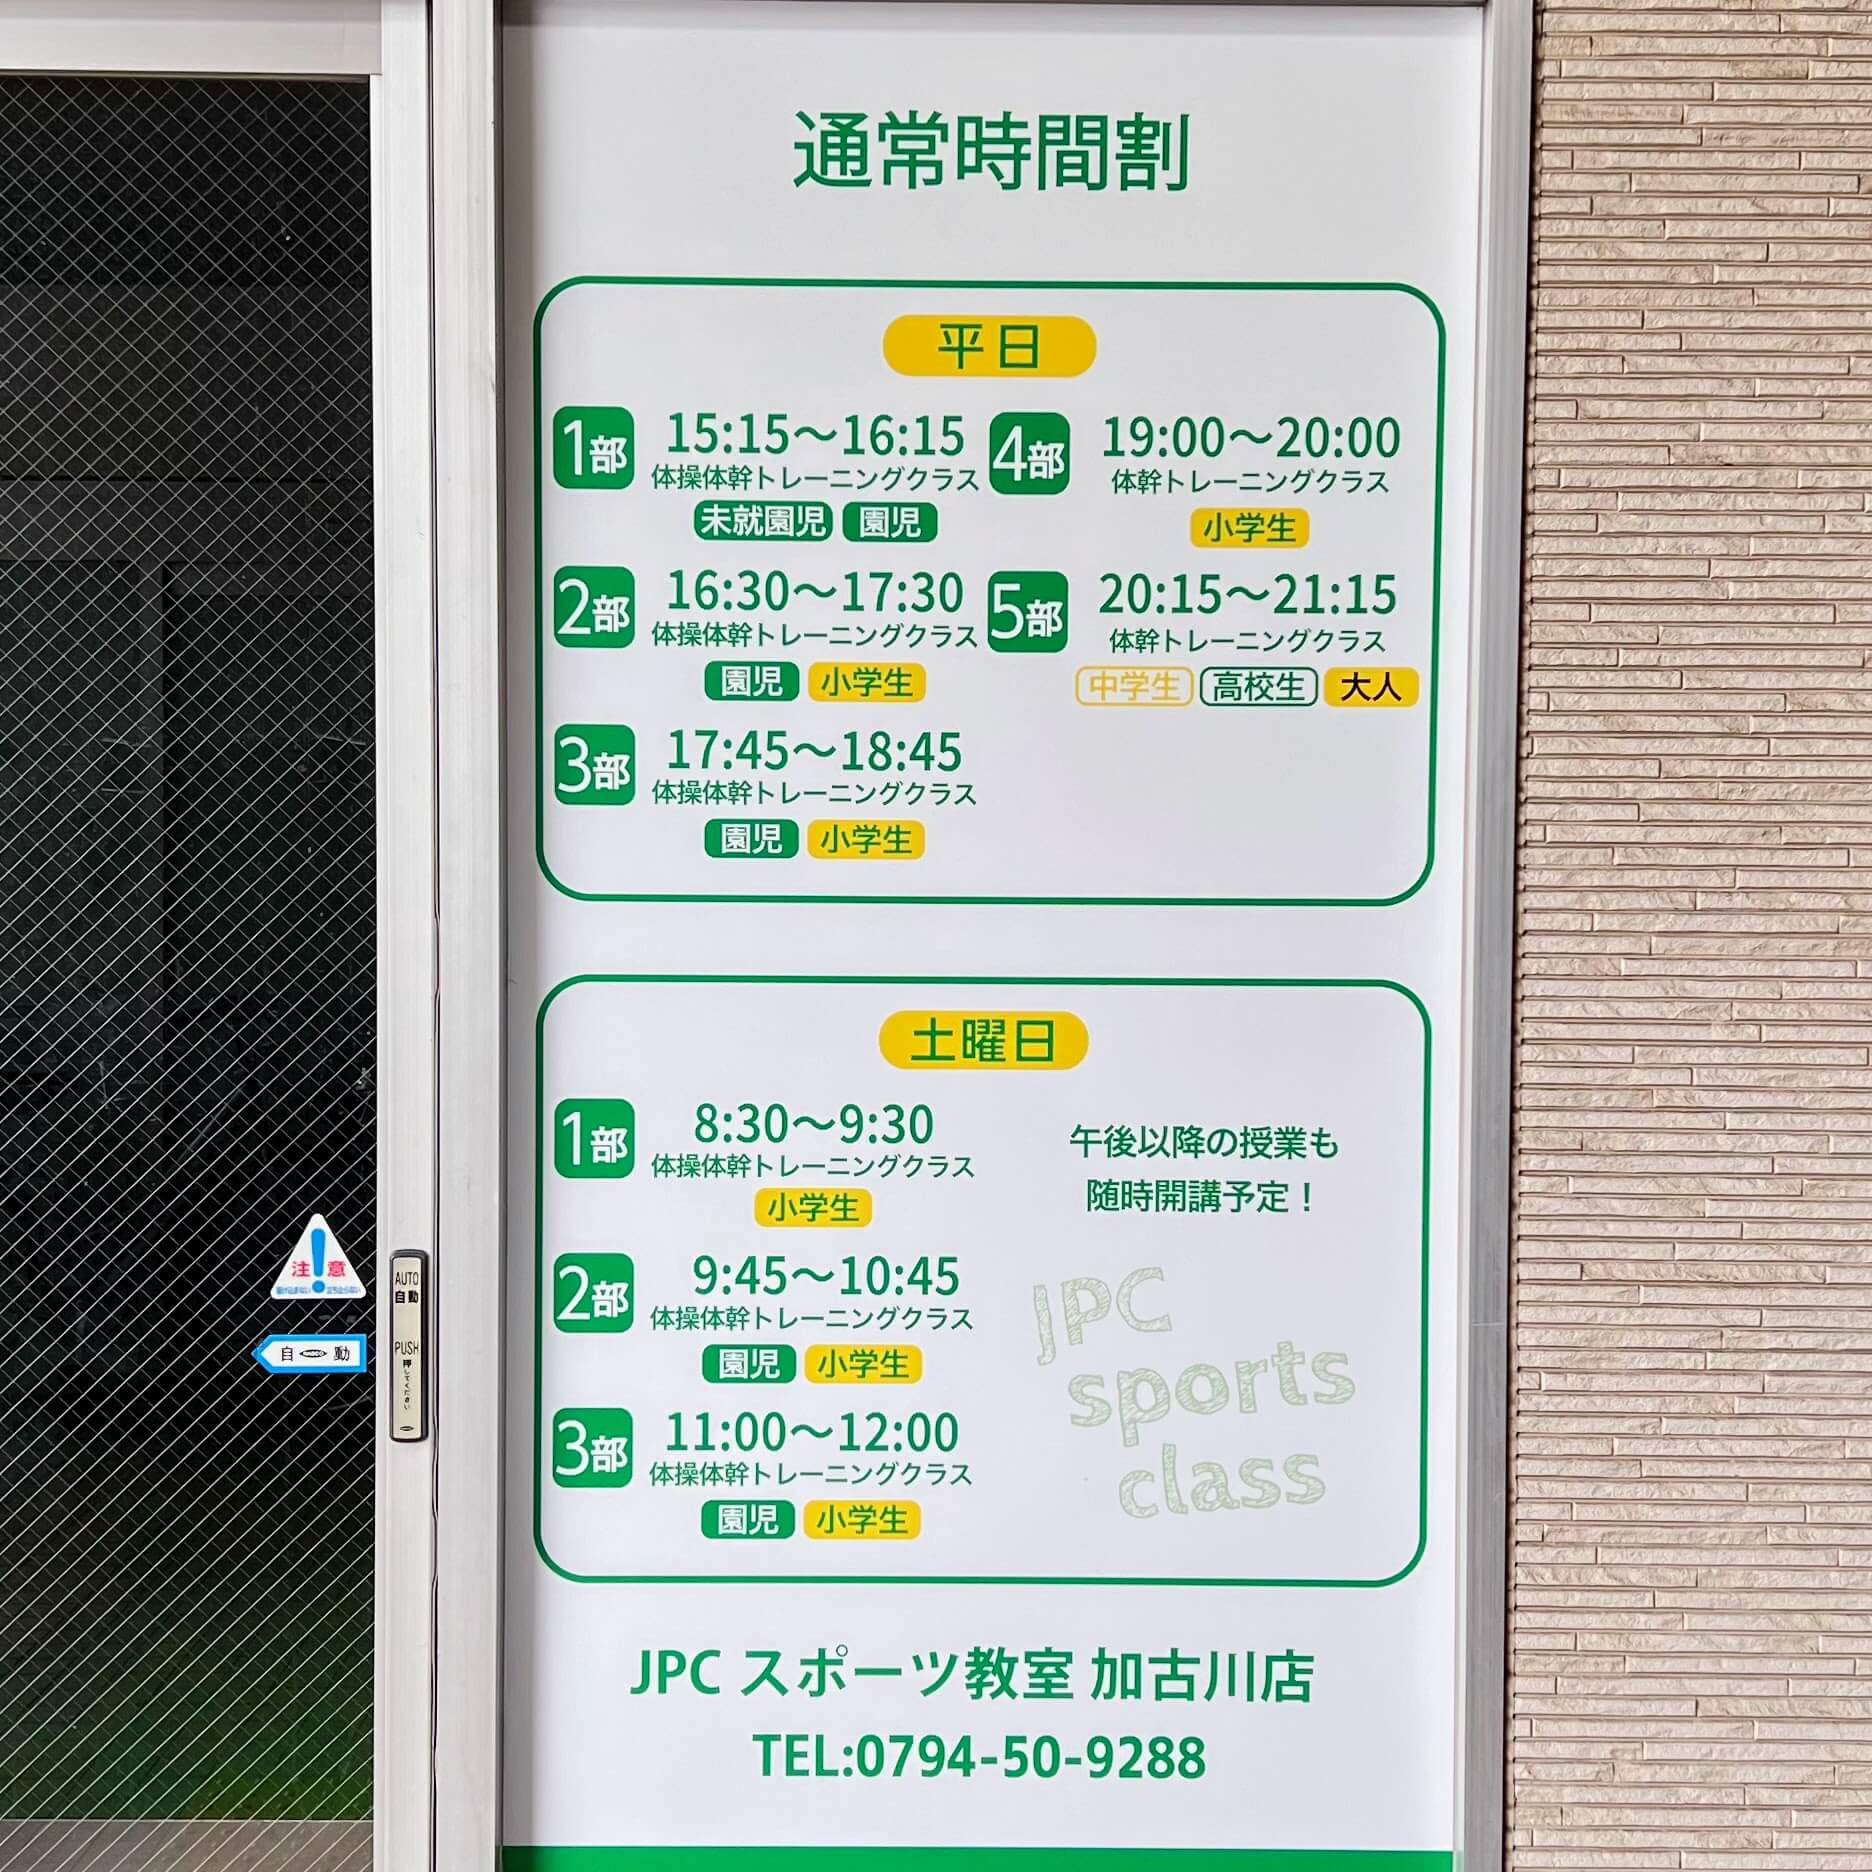 JPCスポーツ教室 加古川店の通常時間割